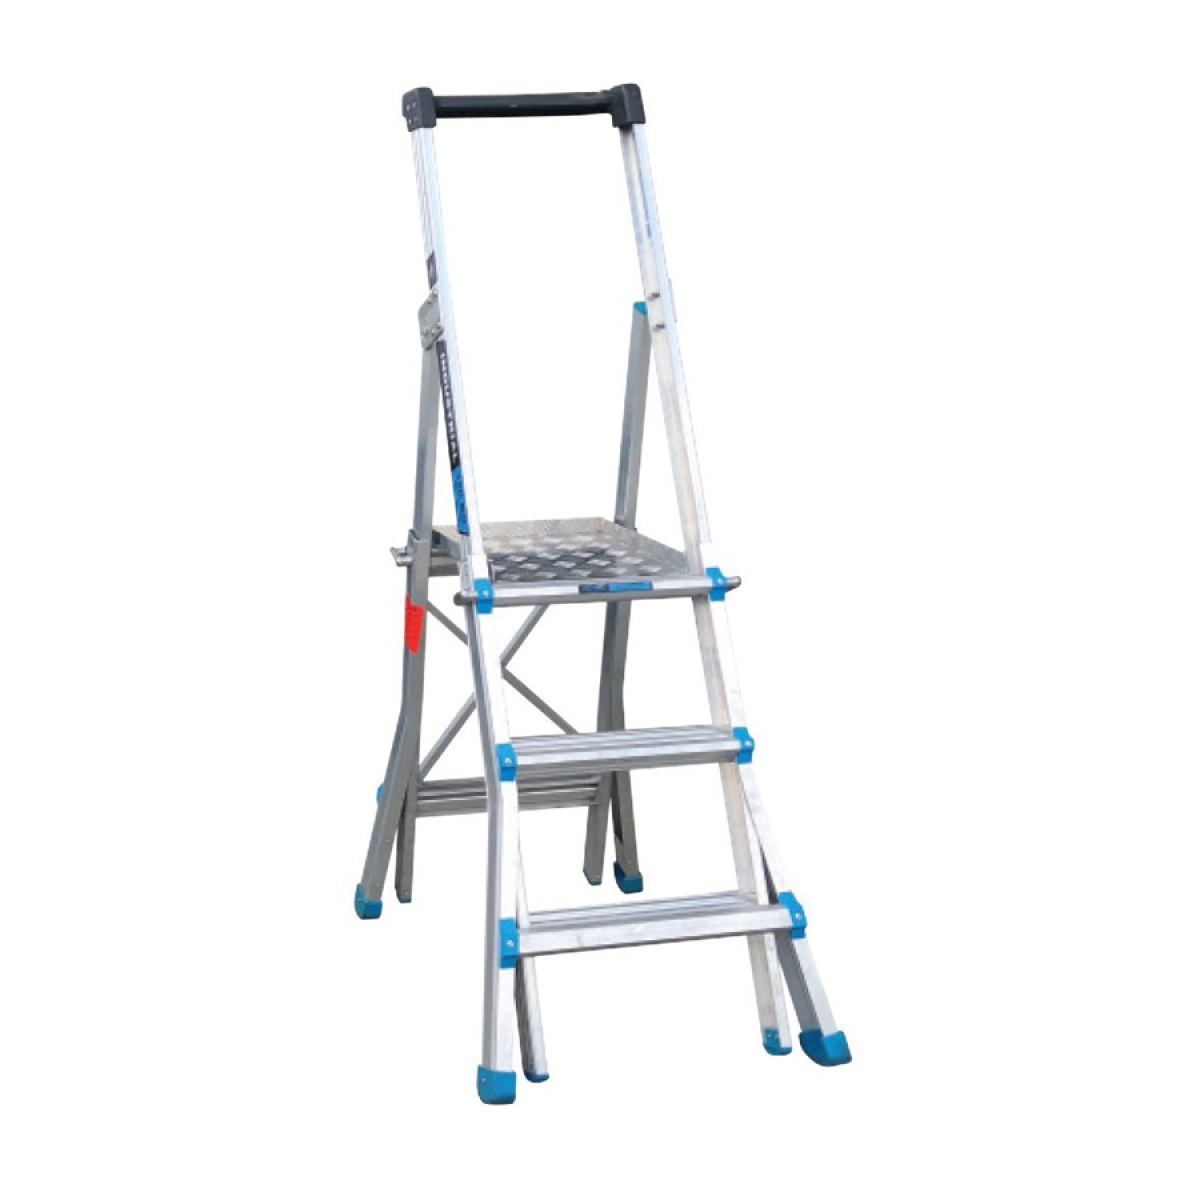 Easy Access Adjustable Platform Ladder 3-5 Step